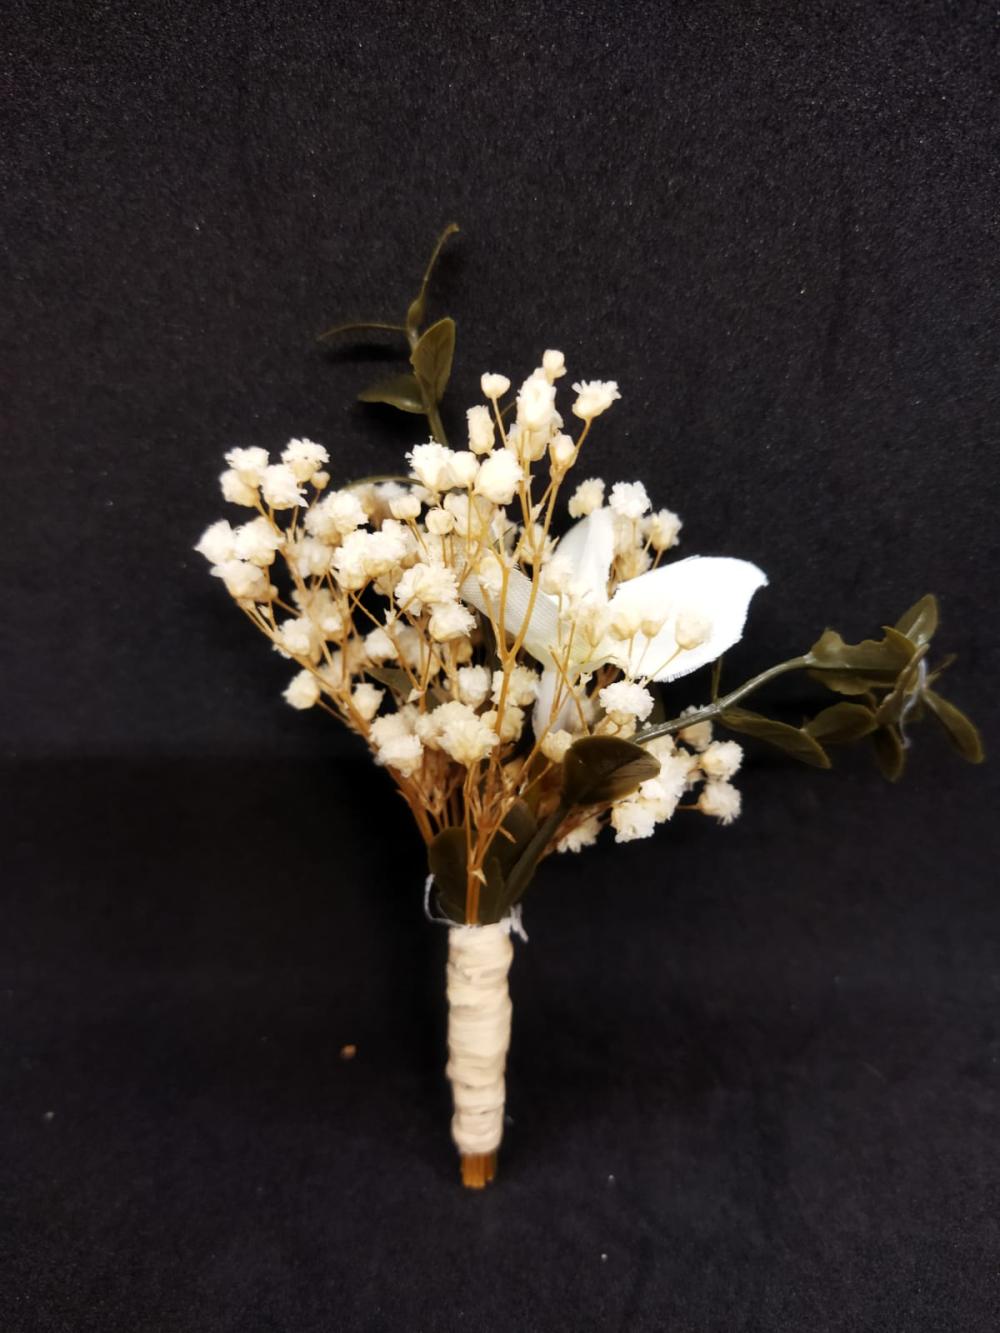 Beyaz Çiçek Detayı Olan Cipsolarla Süslenmiş Damat Yaka Çiçeği 